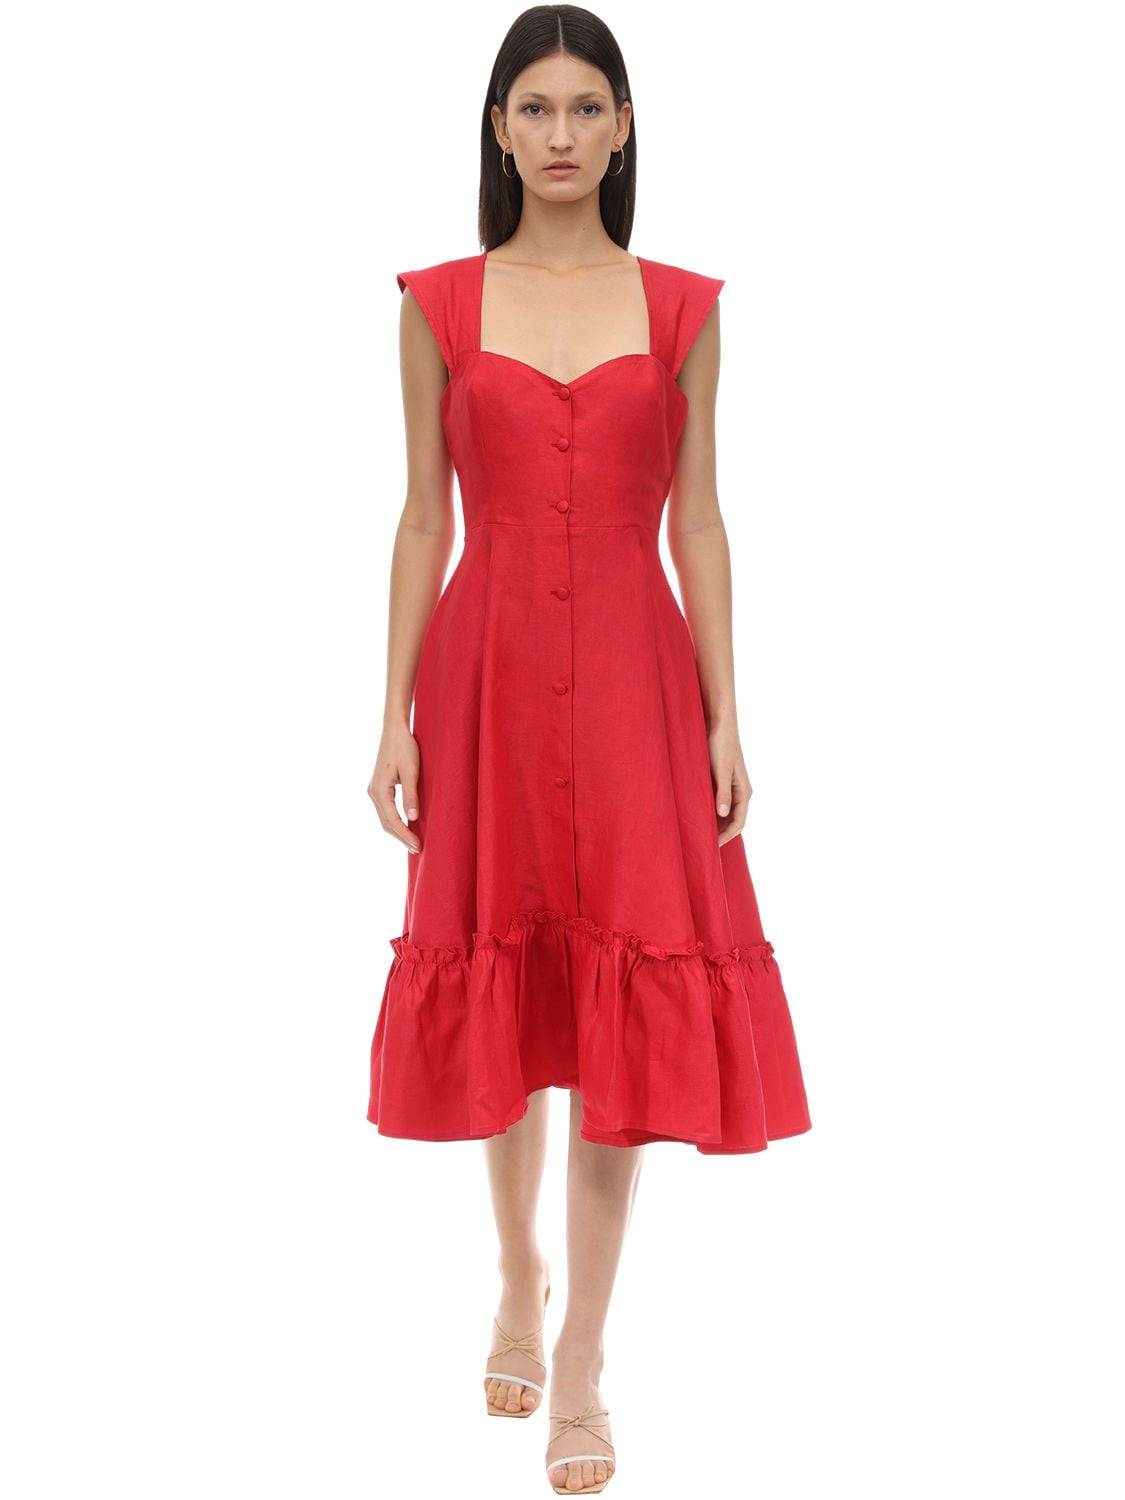 Gioia Bini Camilla Linen Dress In Red